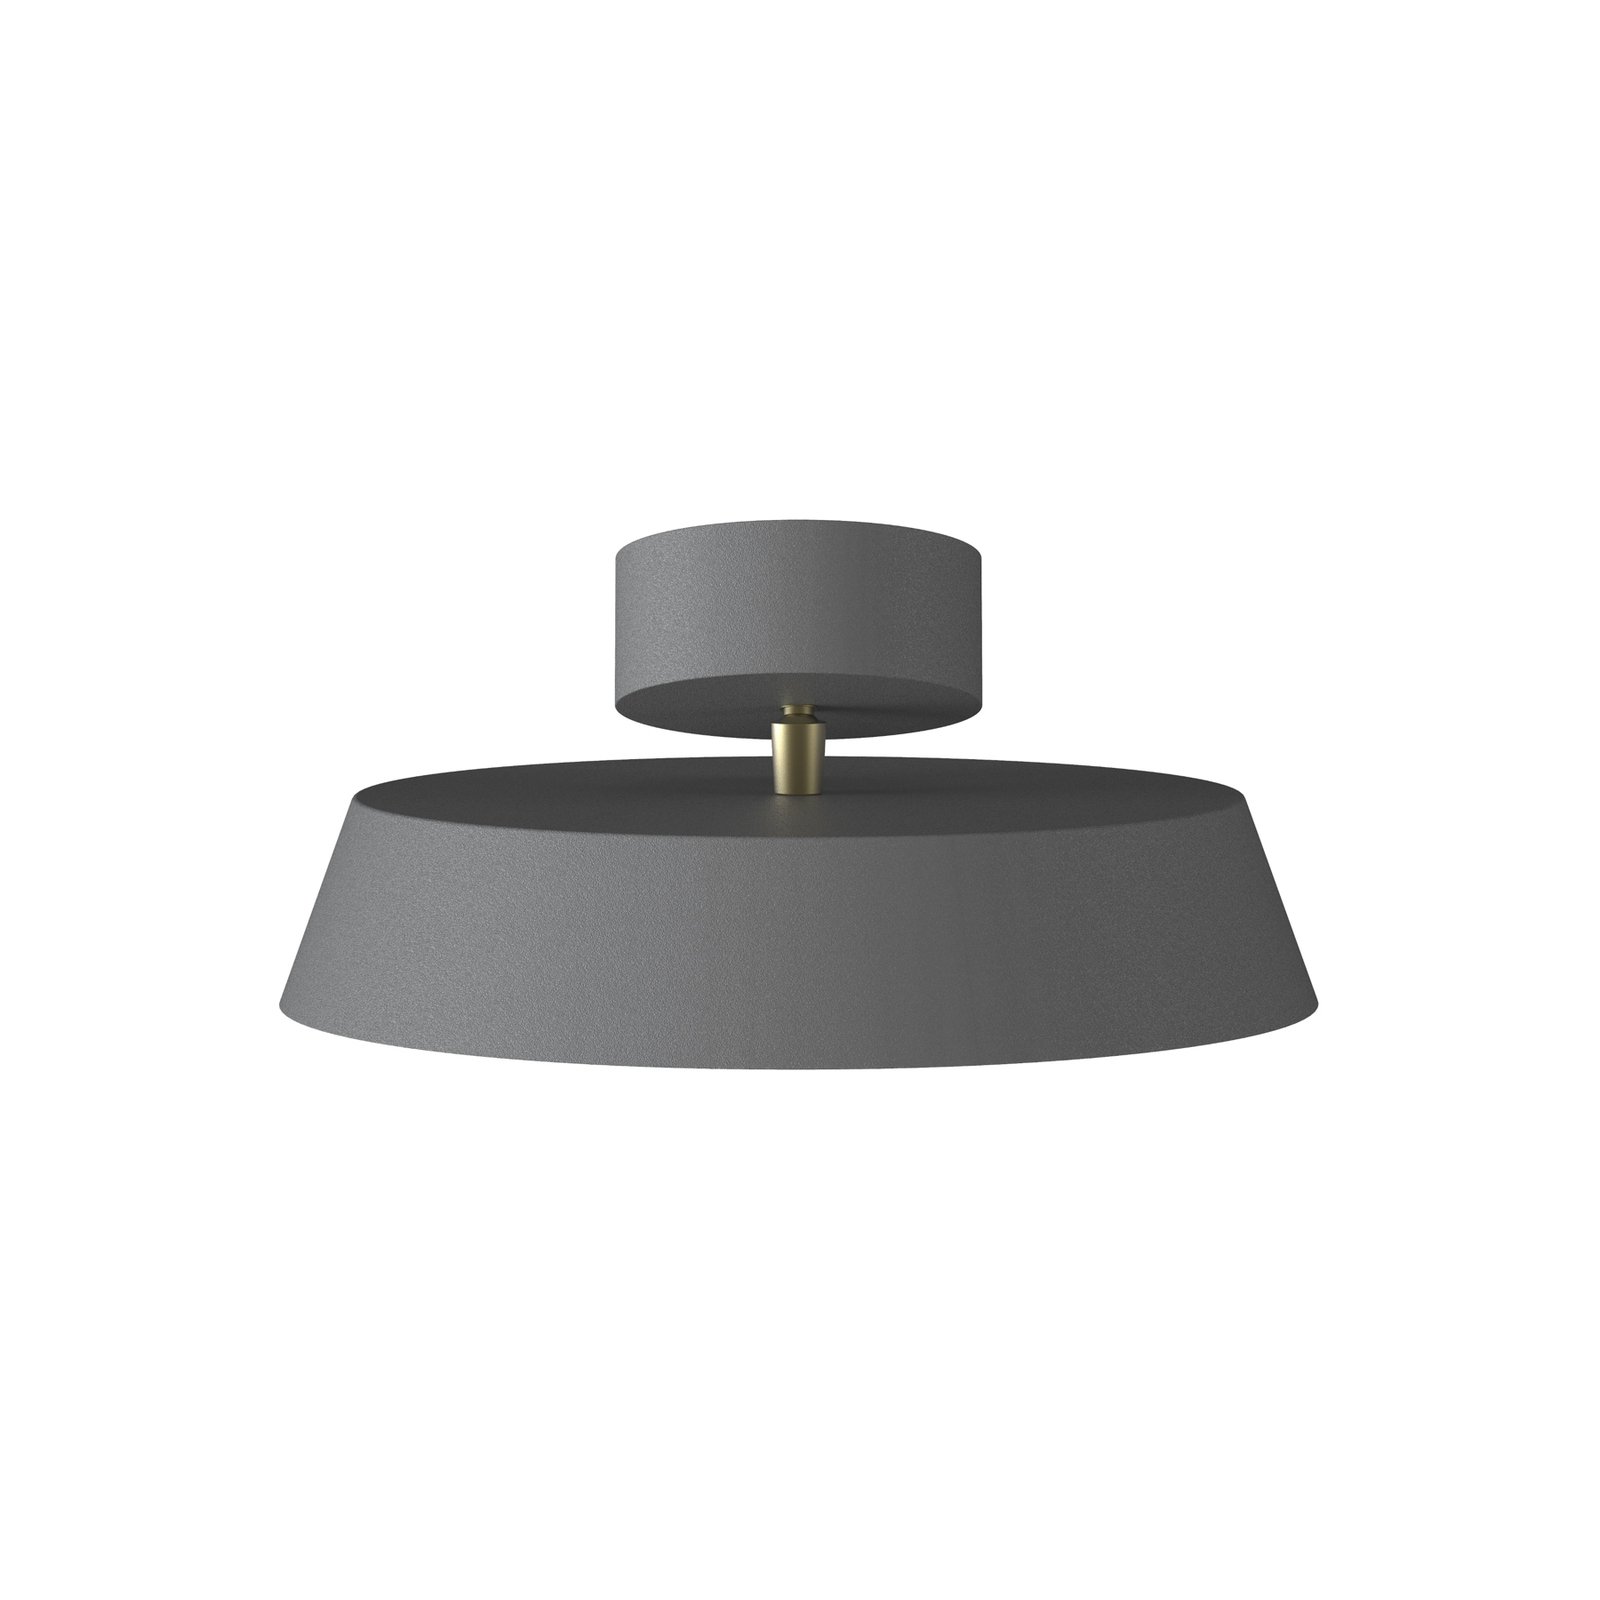 LED stropna svjetiljka Kaito 2 Dim, siva, Ø 30 cm, mogućnost prigušivanja